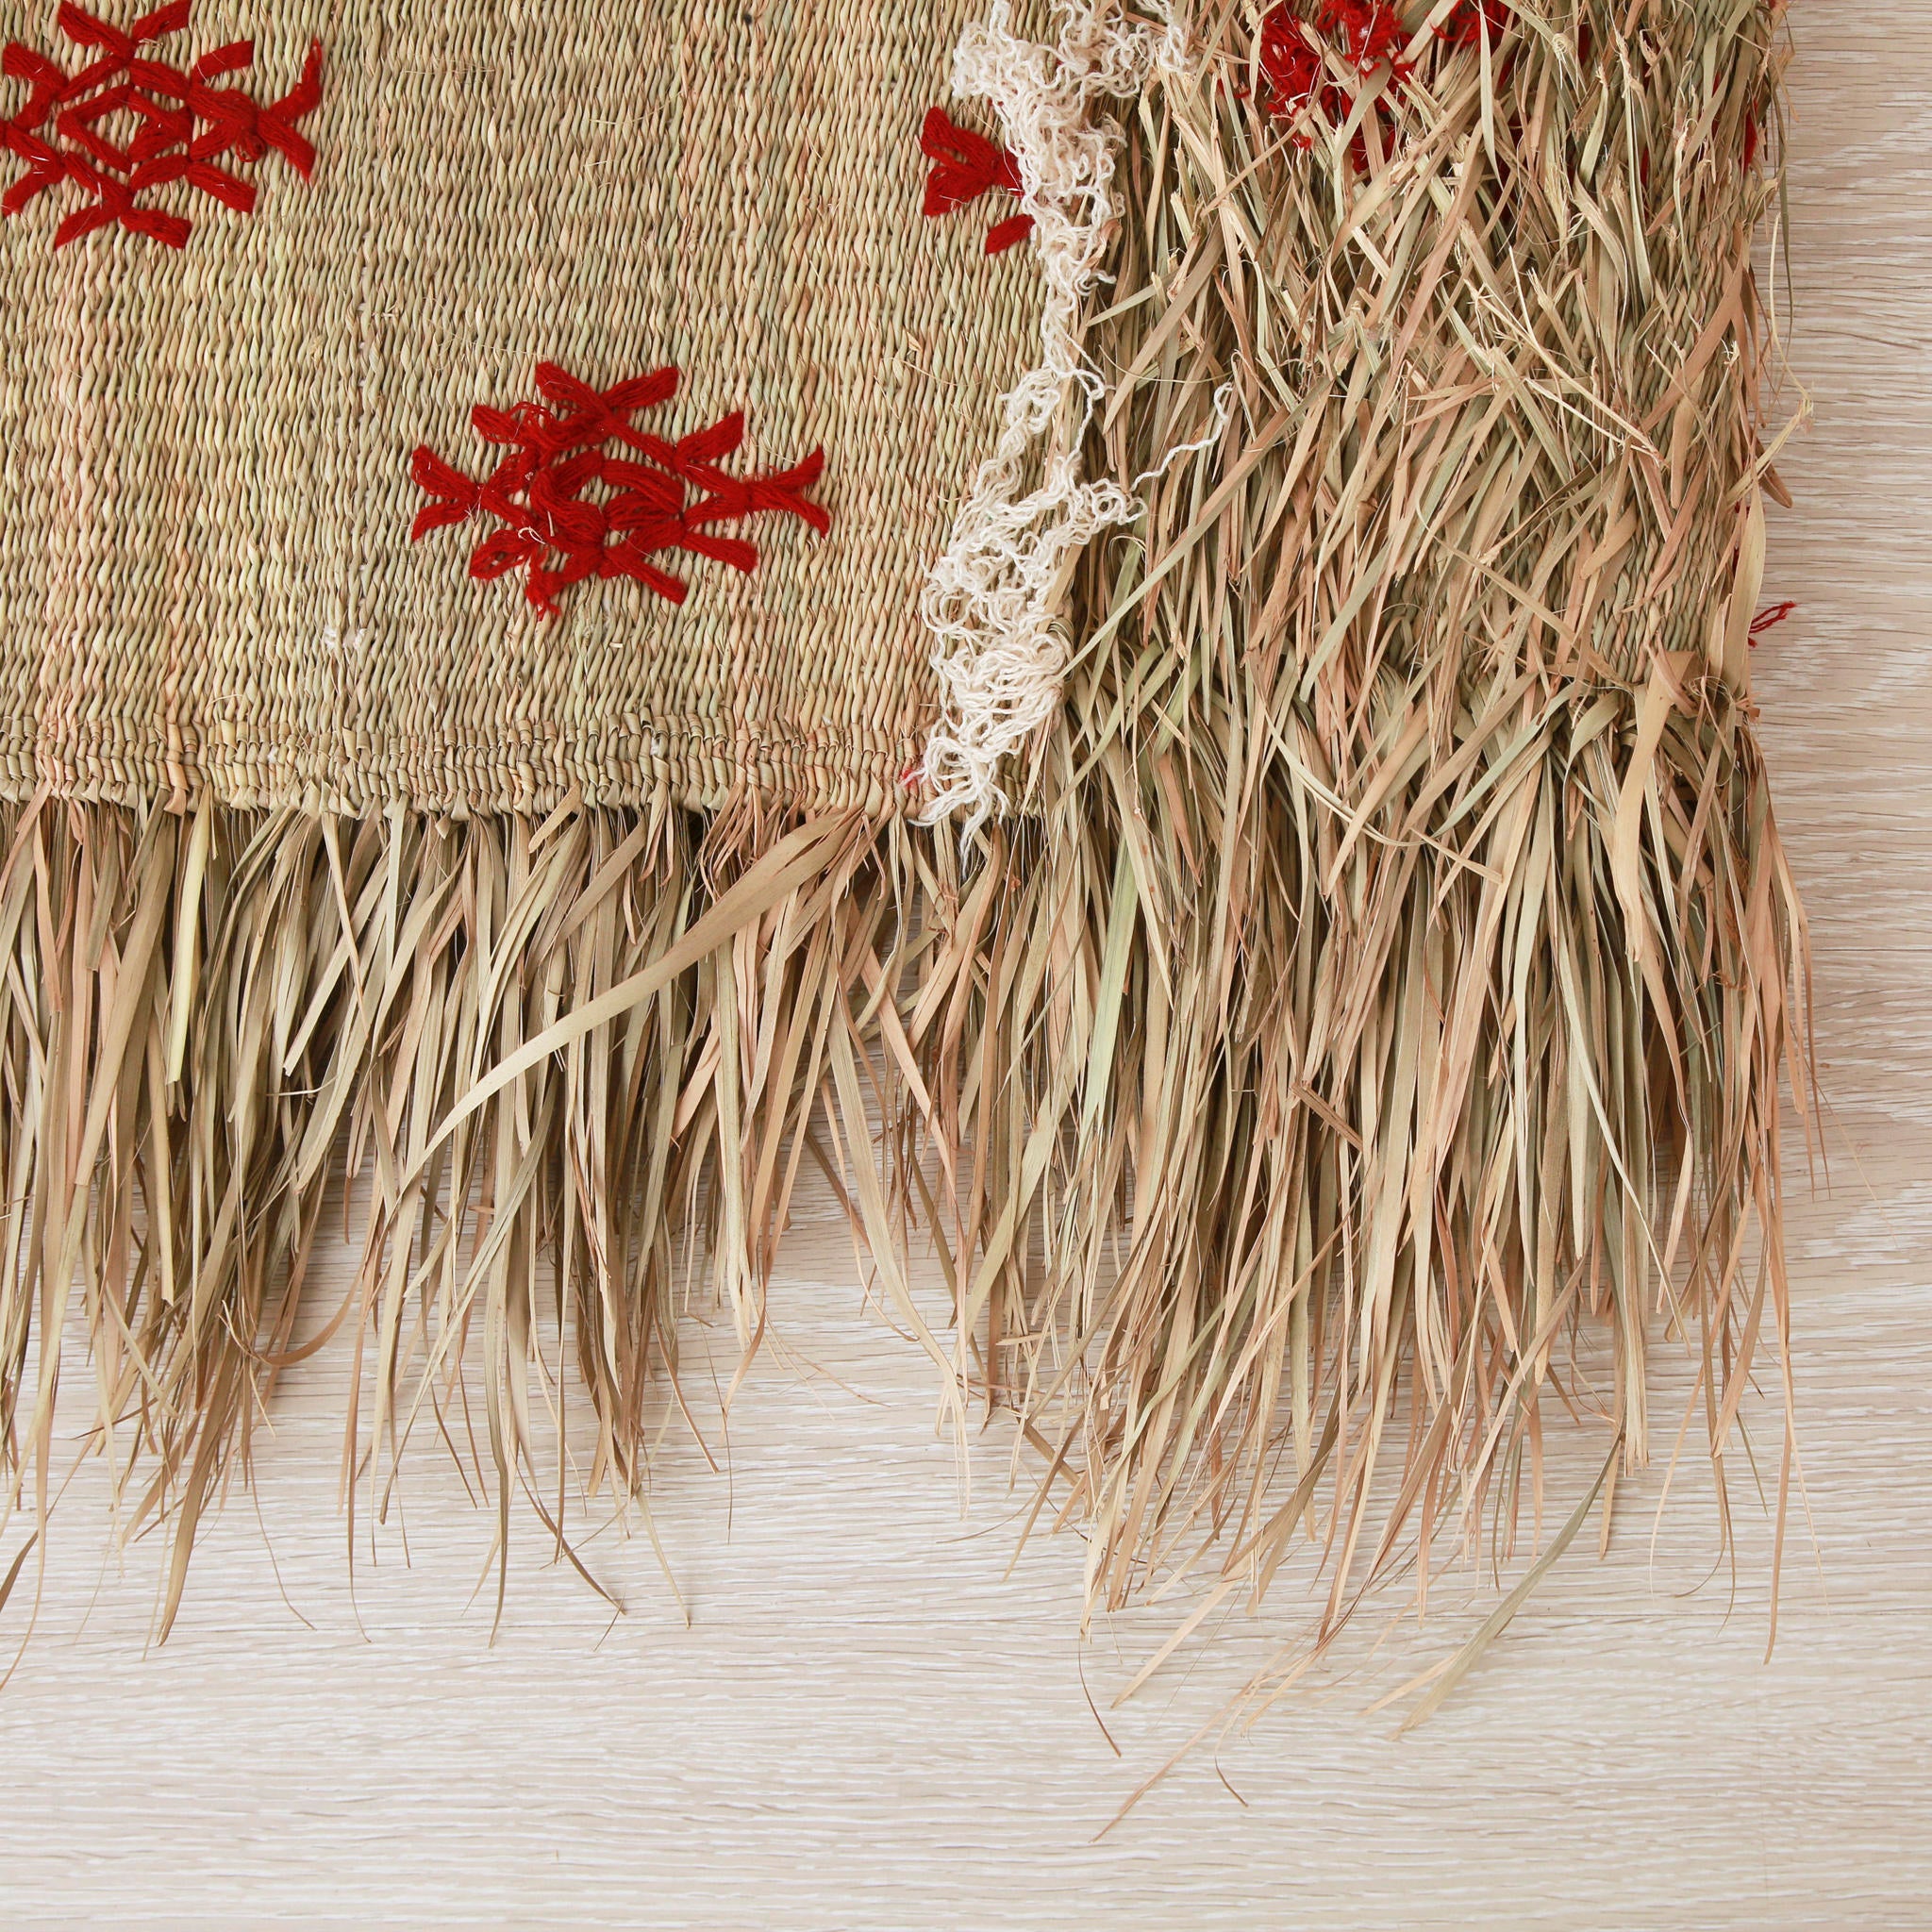 dettaglio del retro di una piccola stuoia hassira intrecciata con paglia di palma e ricamata con simboli in lana rossa